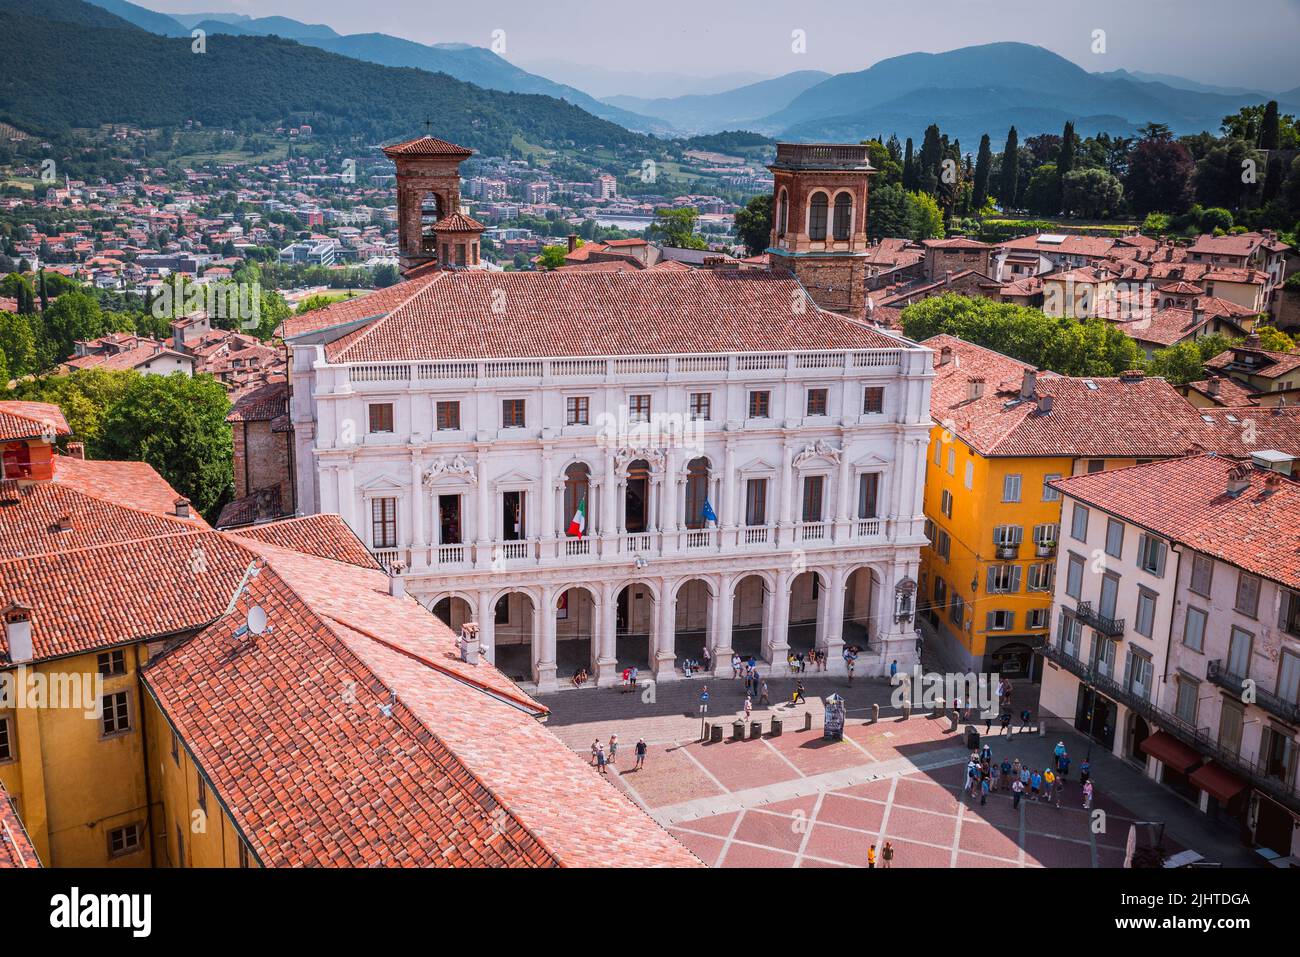 La Biblioteca Civica Angelo mai di Bergamo. Piazza Vecchia è la piazza di Bergamo situata nella parte alta della città, sede per molti secoli del Foto Stock